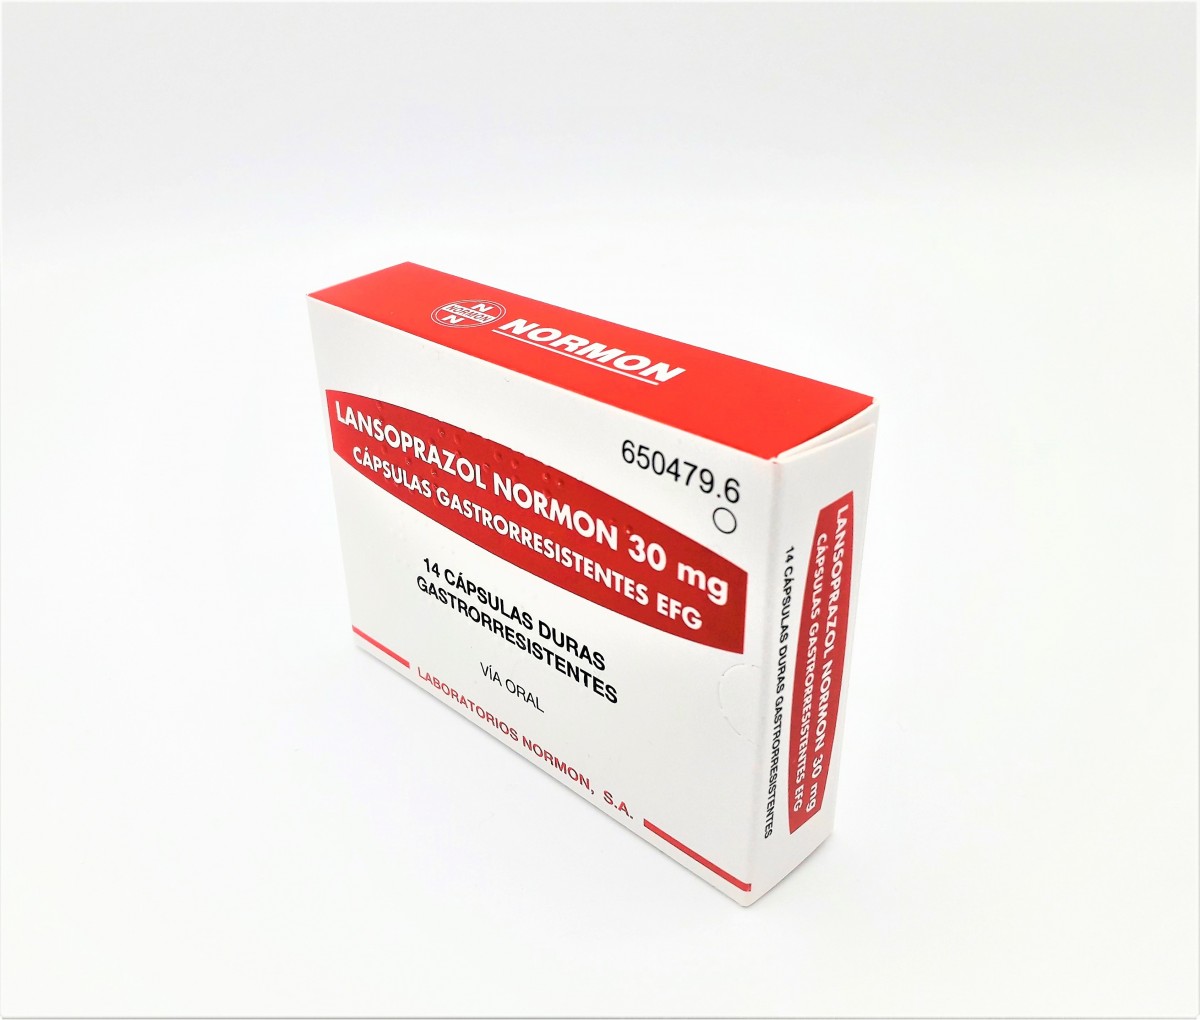 LANSOPRAZOL NORMON 30 mg CAPSULAS GASTRORRESISTENTES EFG, 500 cápsulas fotografía del envase.